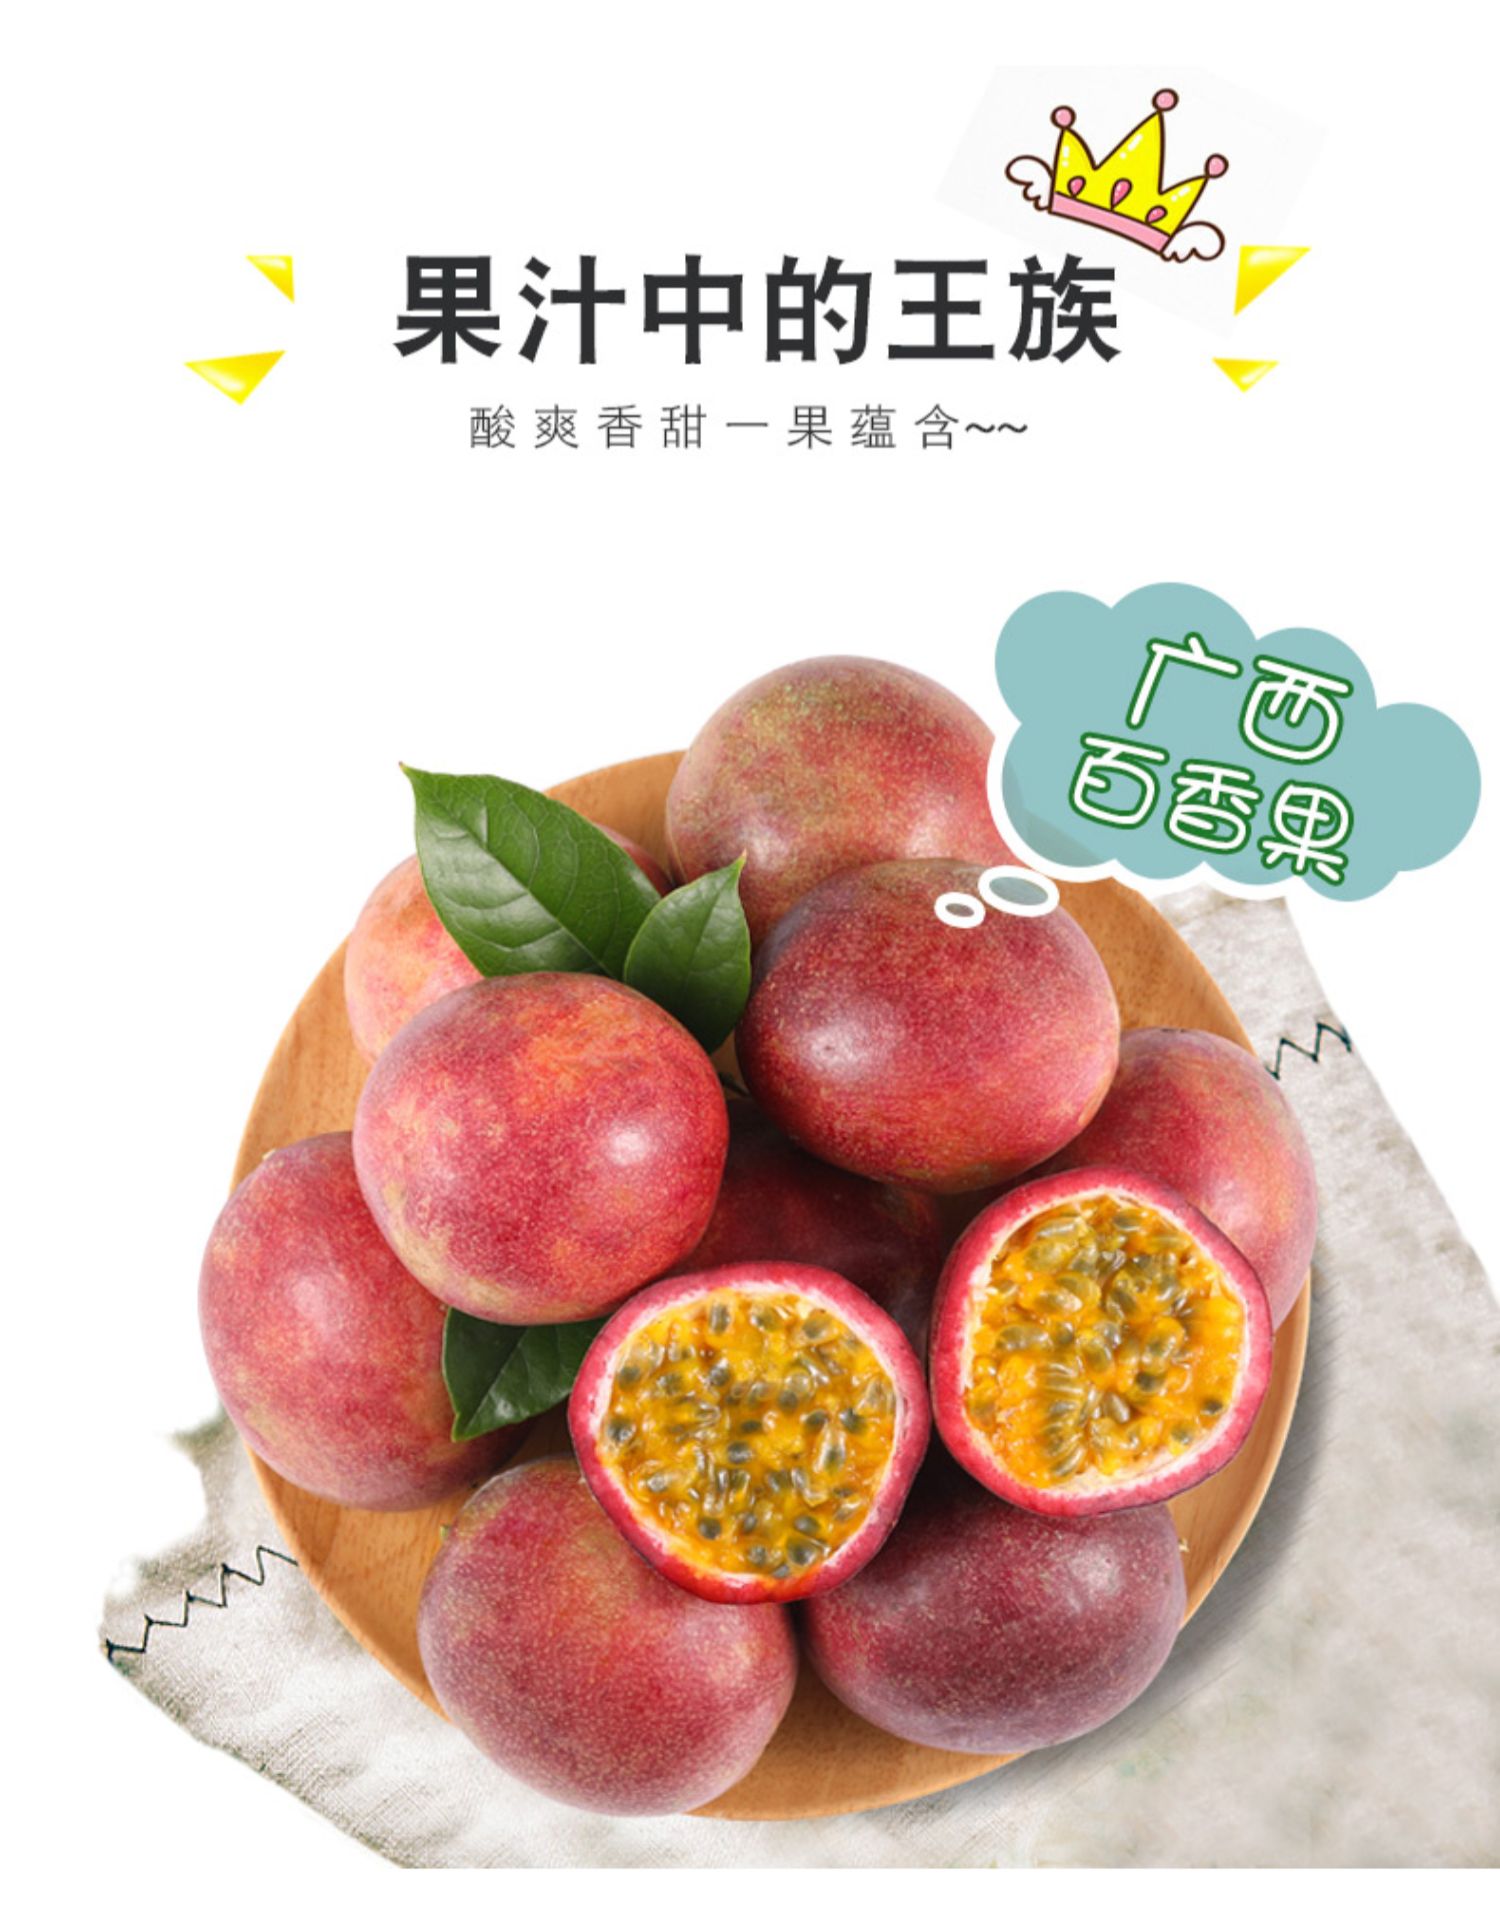 【坏果兜底】广西百香果新鲜大果净重5斤